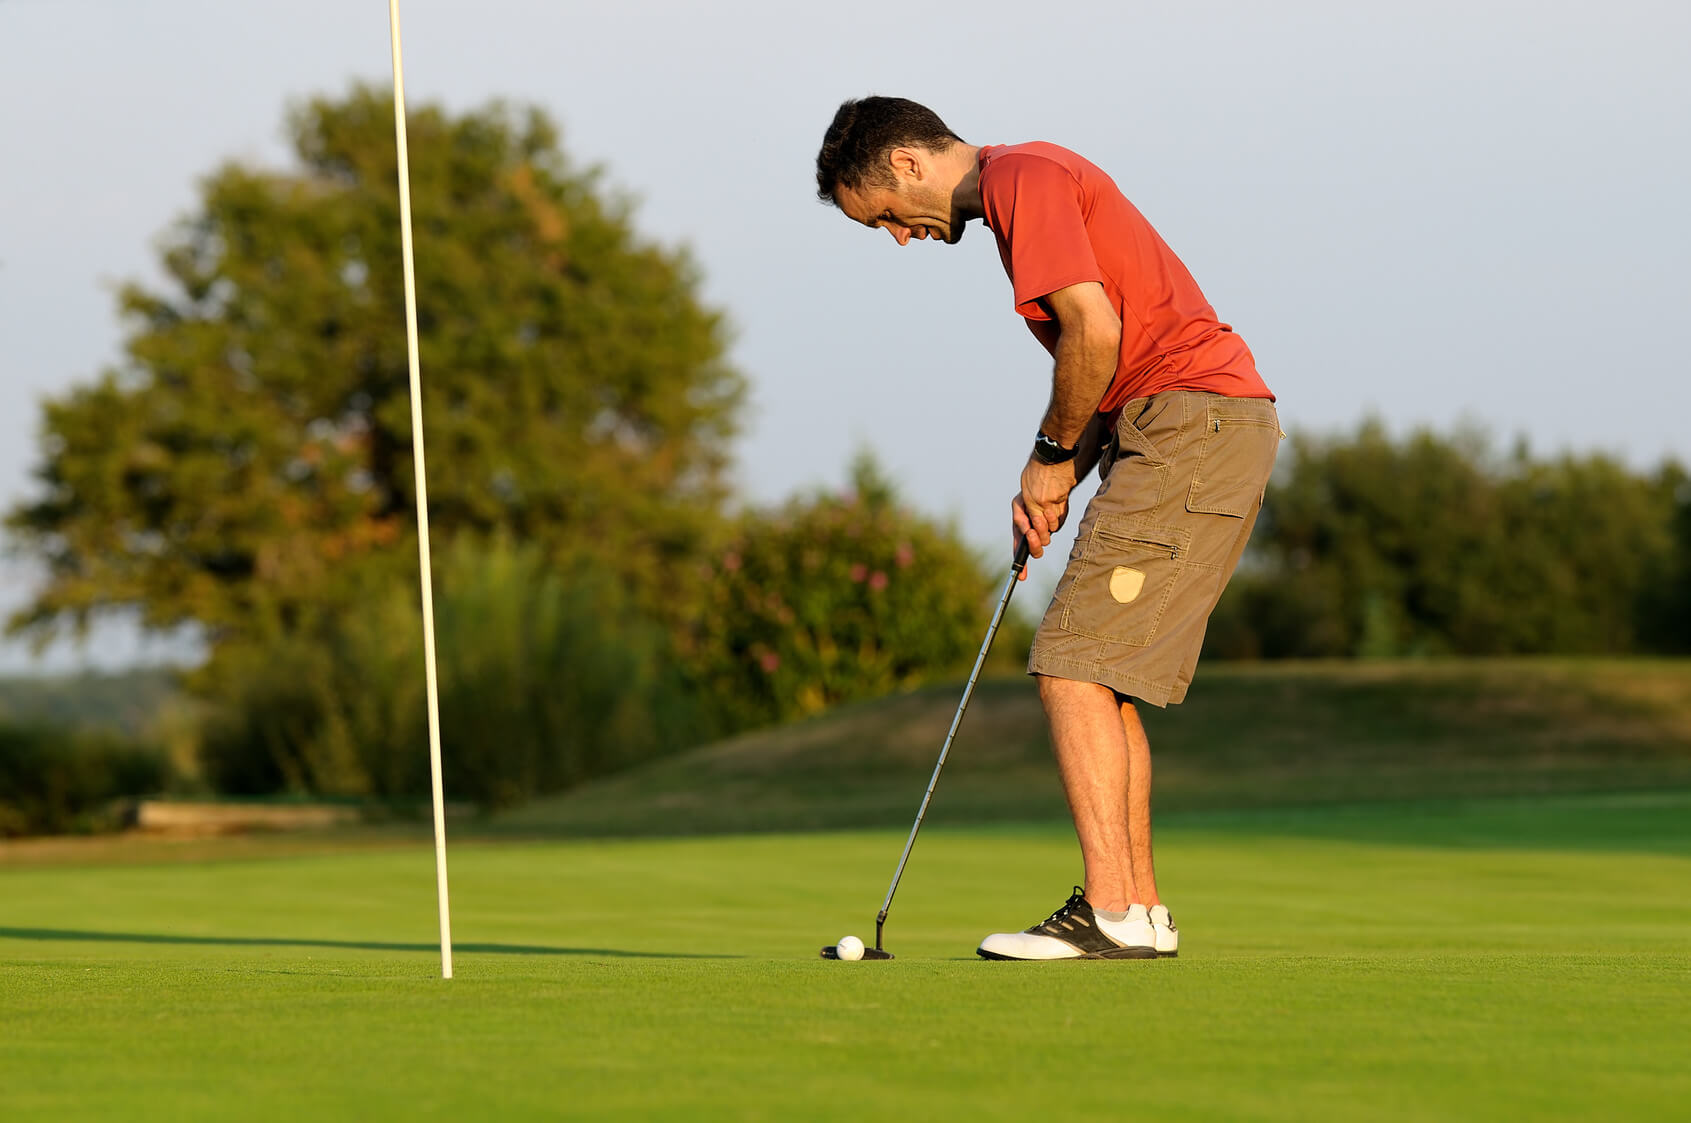 Golfe: um guia sobre o esporte - Tecnoart Engenharia